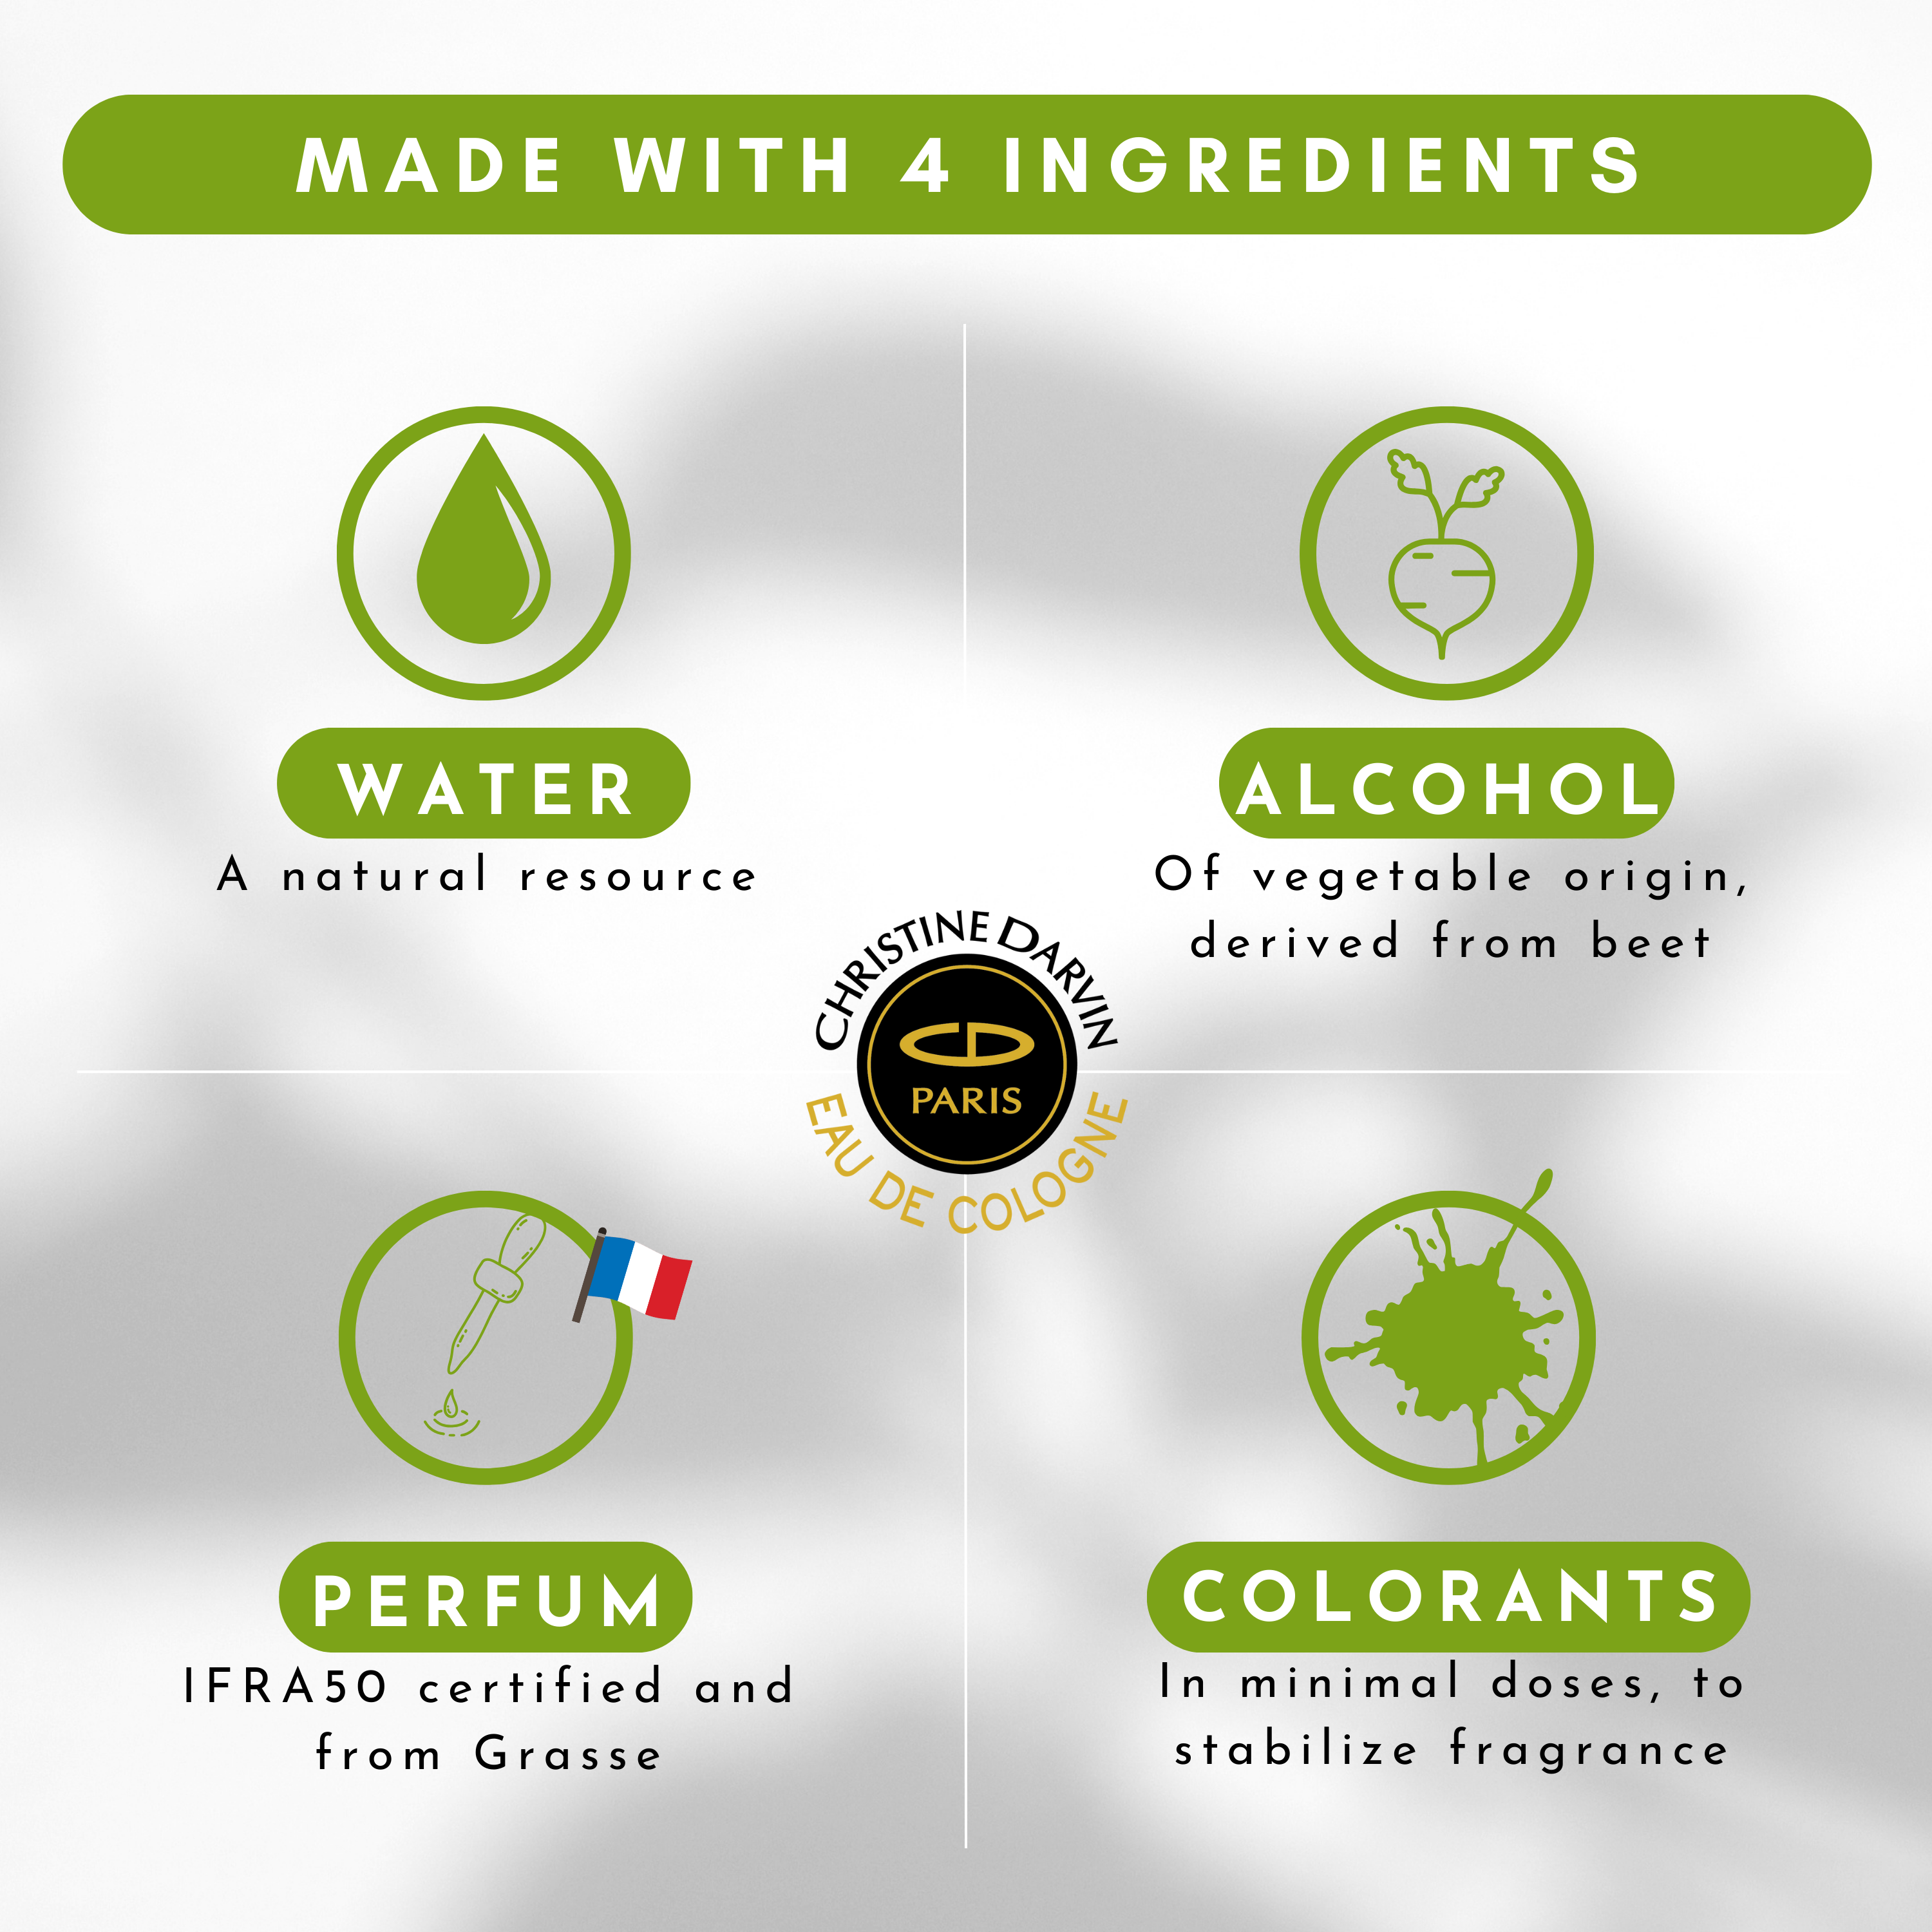 Ingrédient Eau de Cologne parfum Vetyver 97% natural origin and 100% French